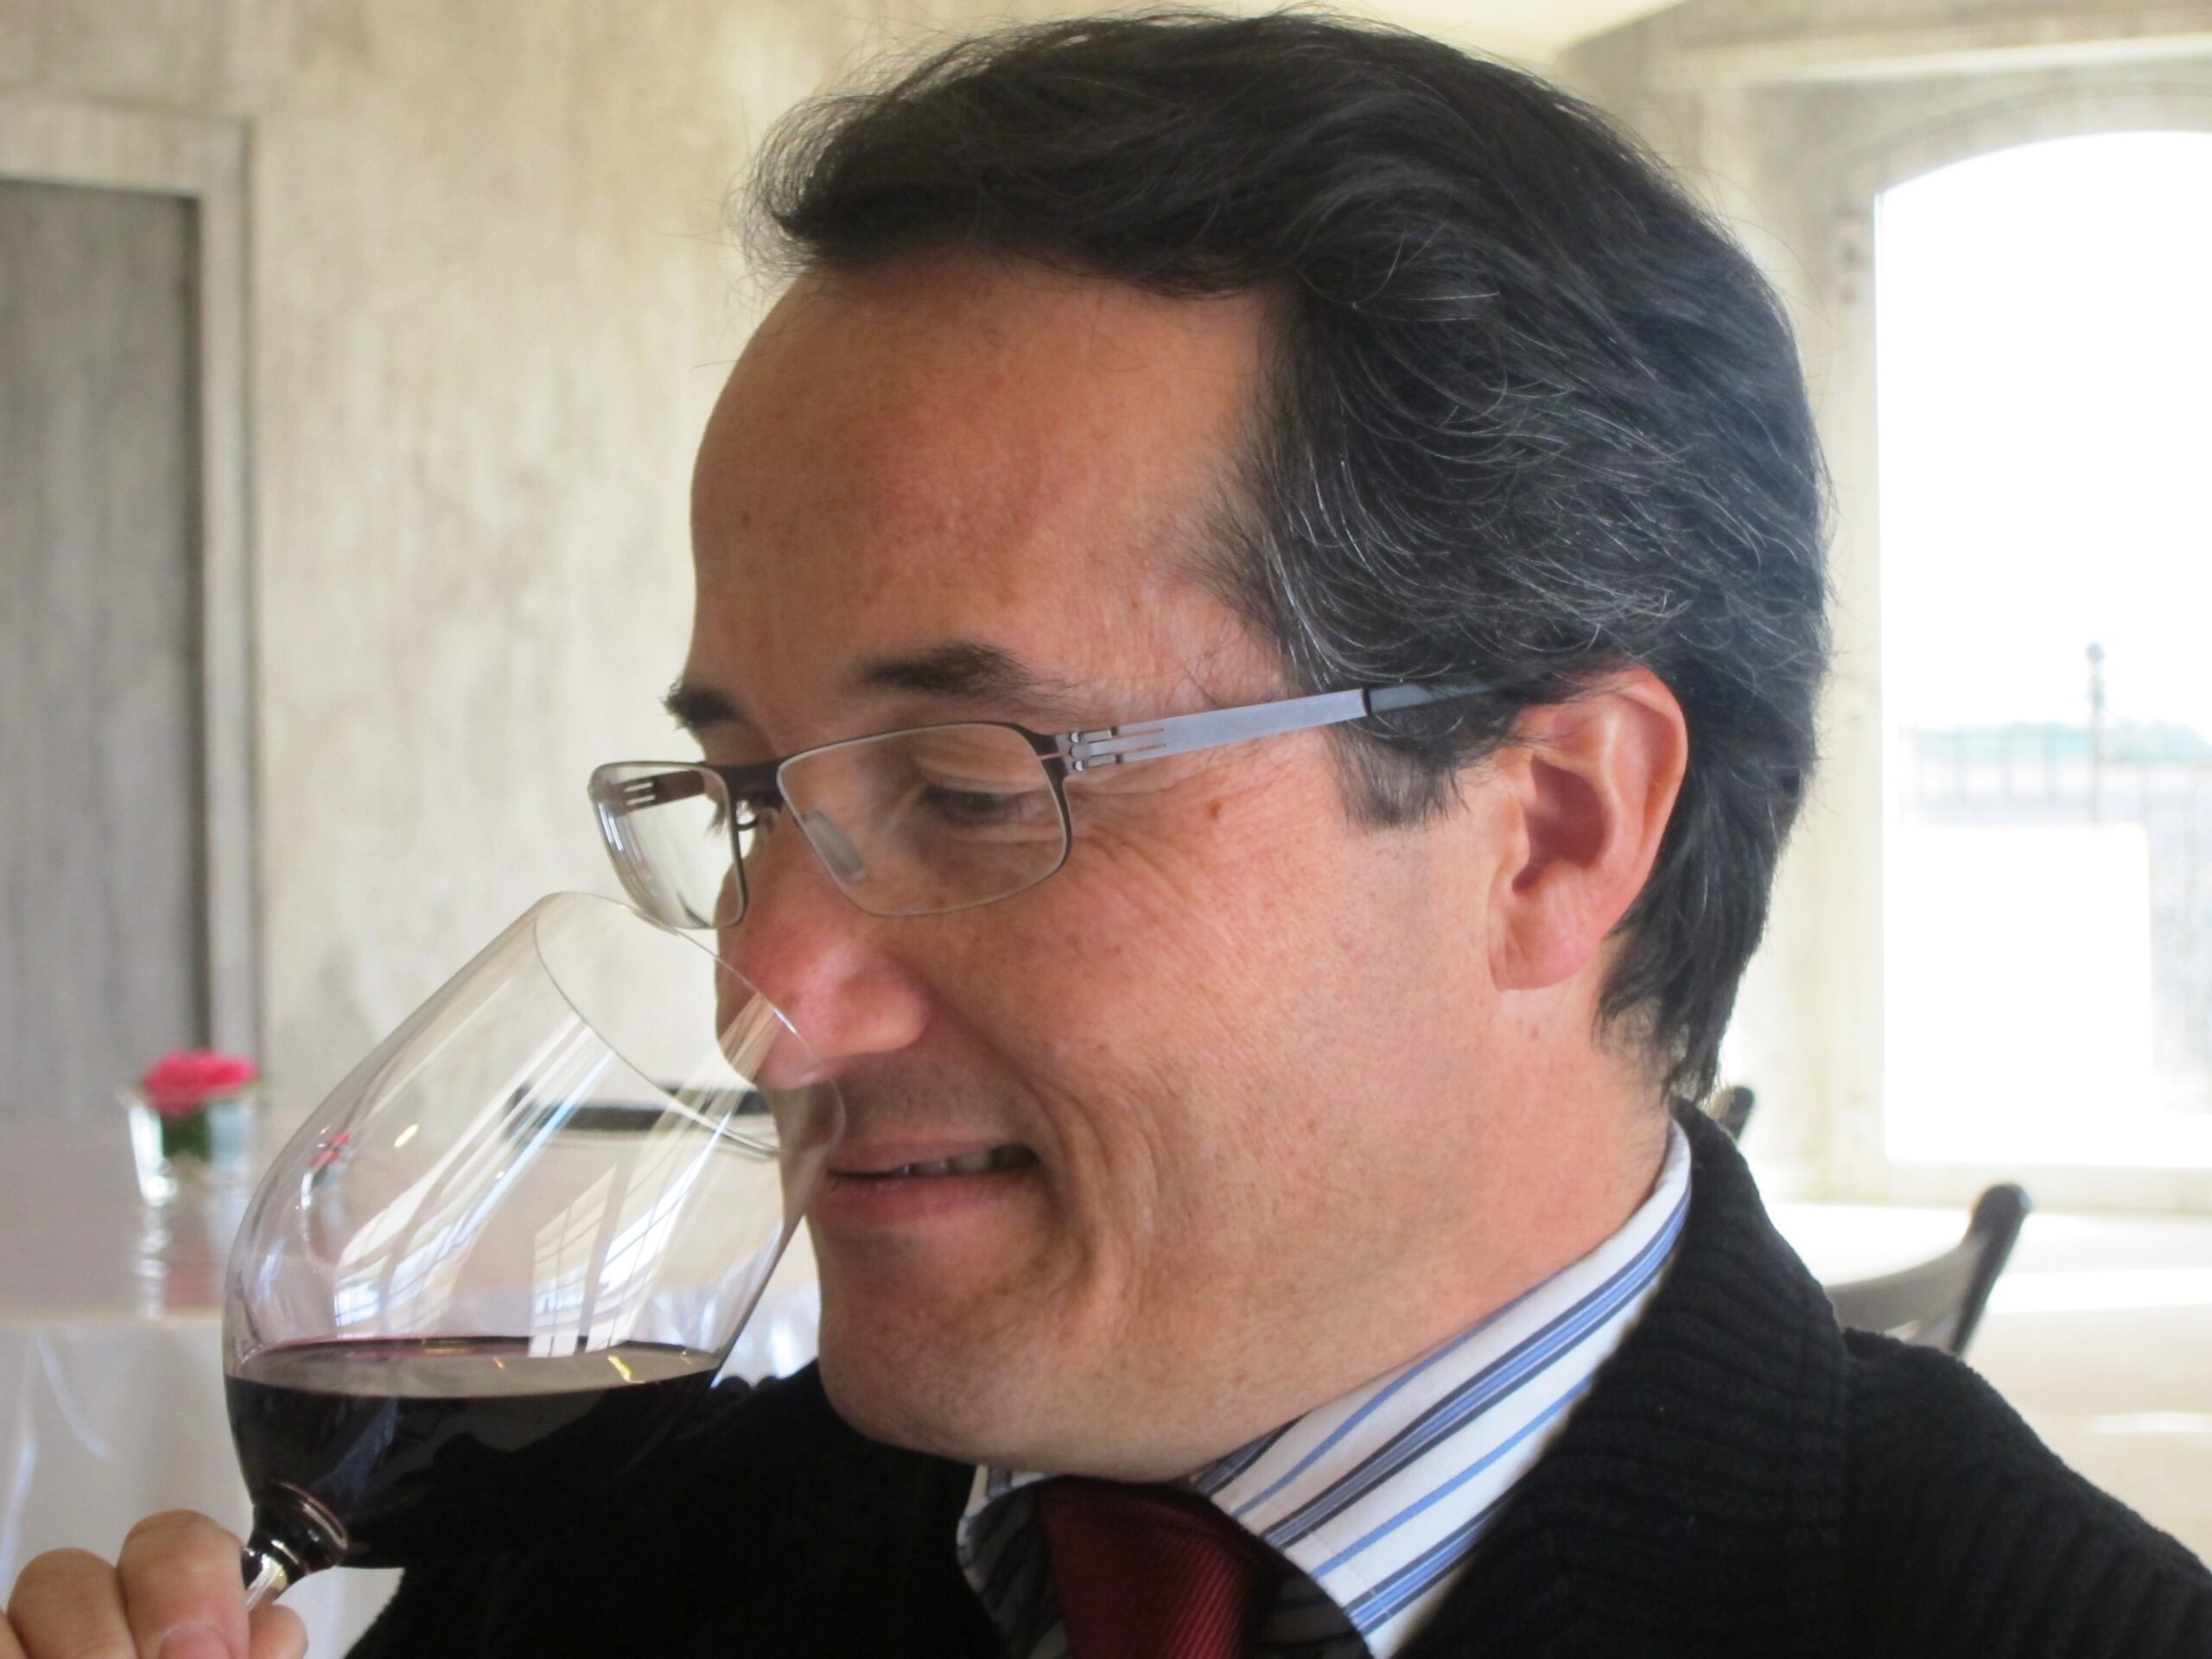 2010 Pichon Lalande Bordeaux Wine New Director, New Wine